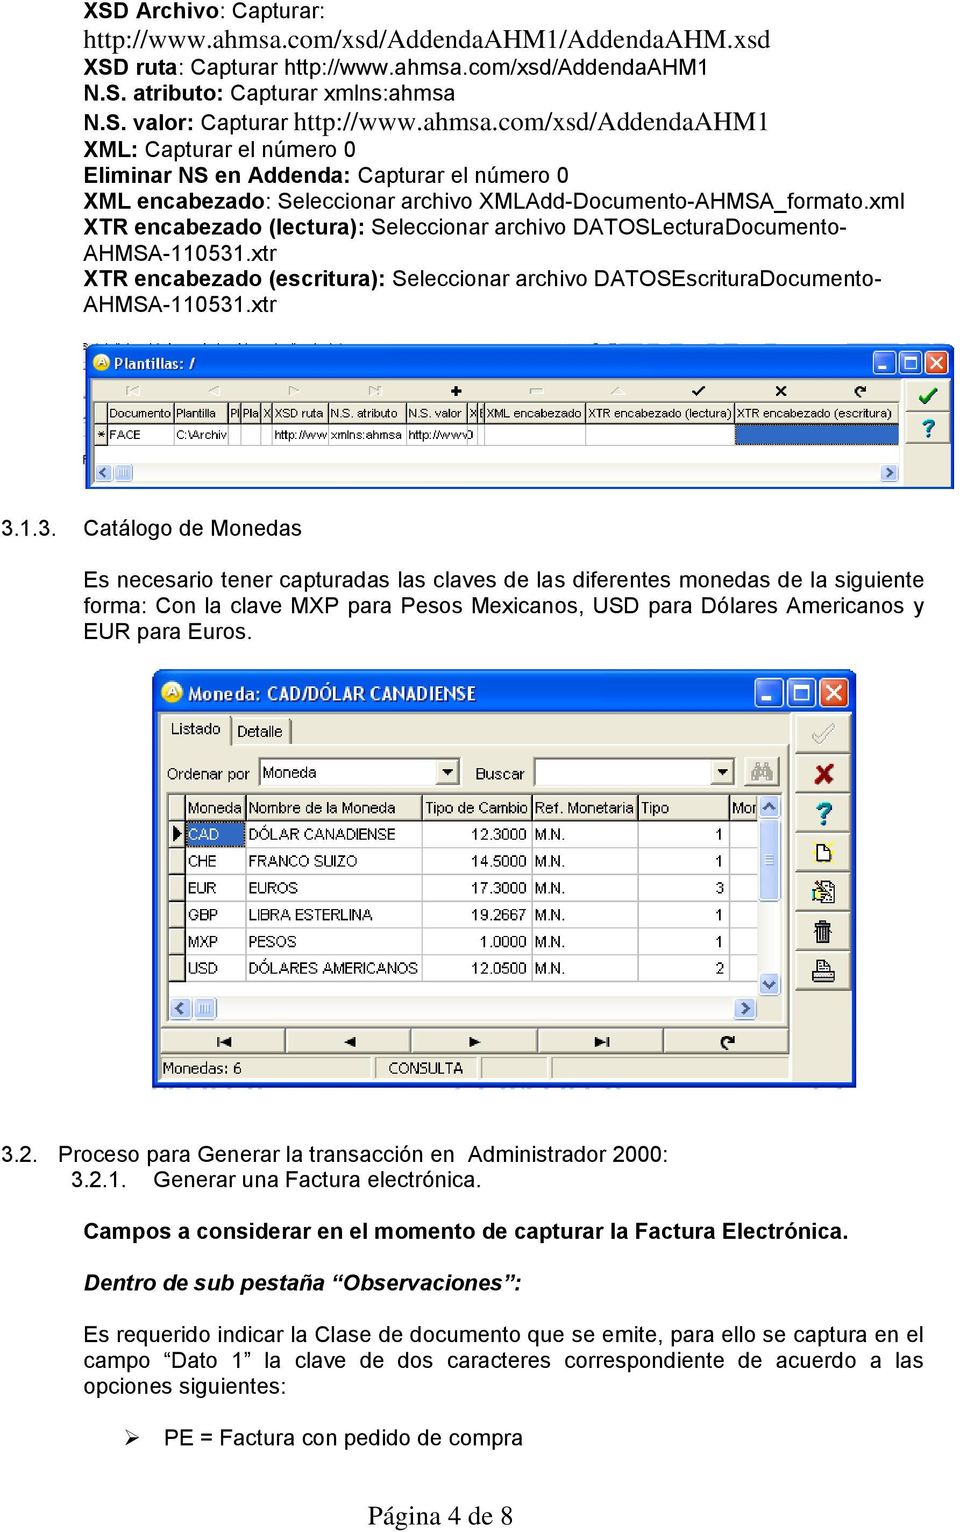 xml XTR encabezado (lectura): Seleccionar archivo DATOSLecturaDocumento- AHMSA-110531